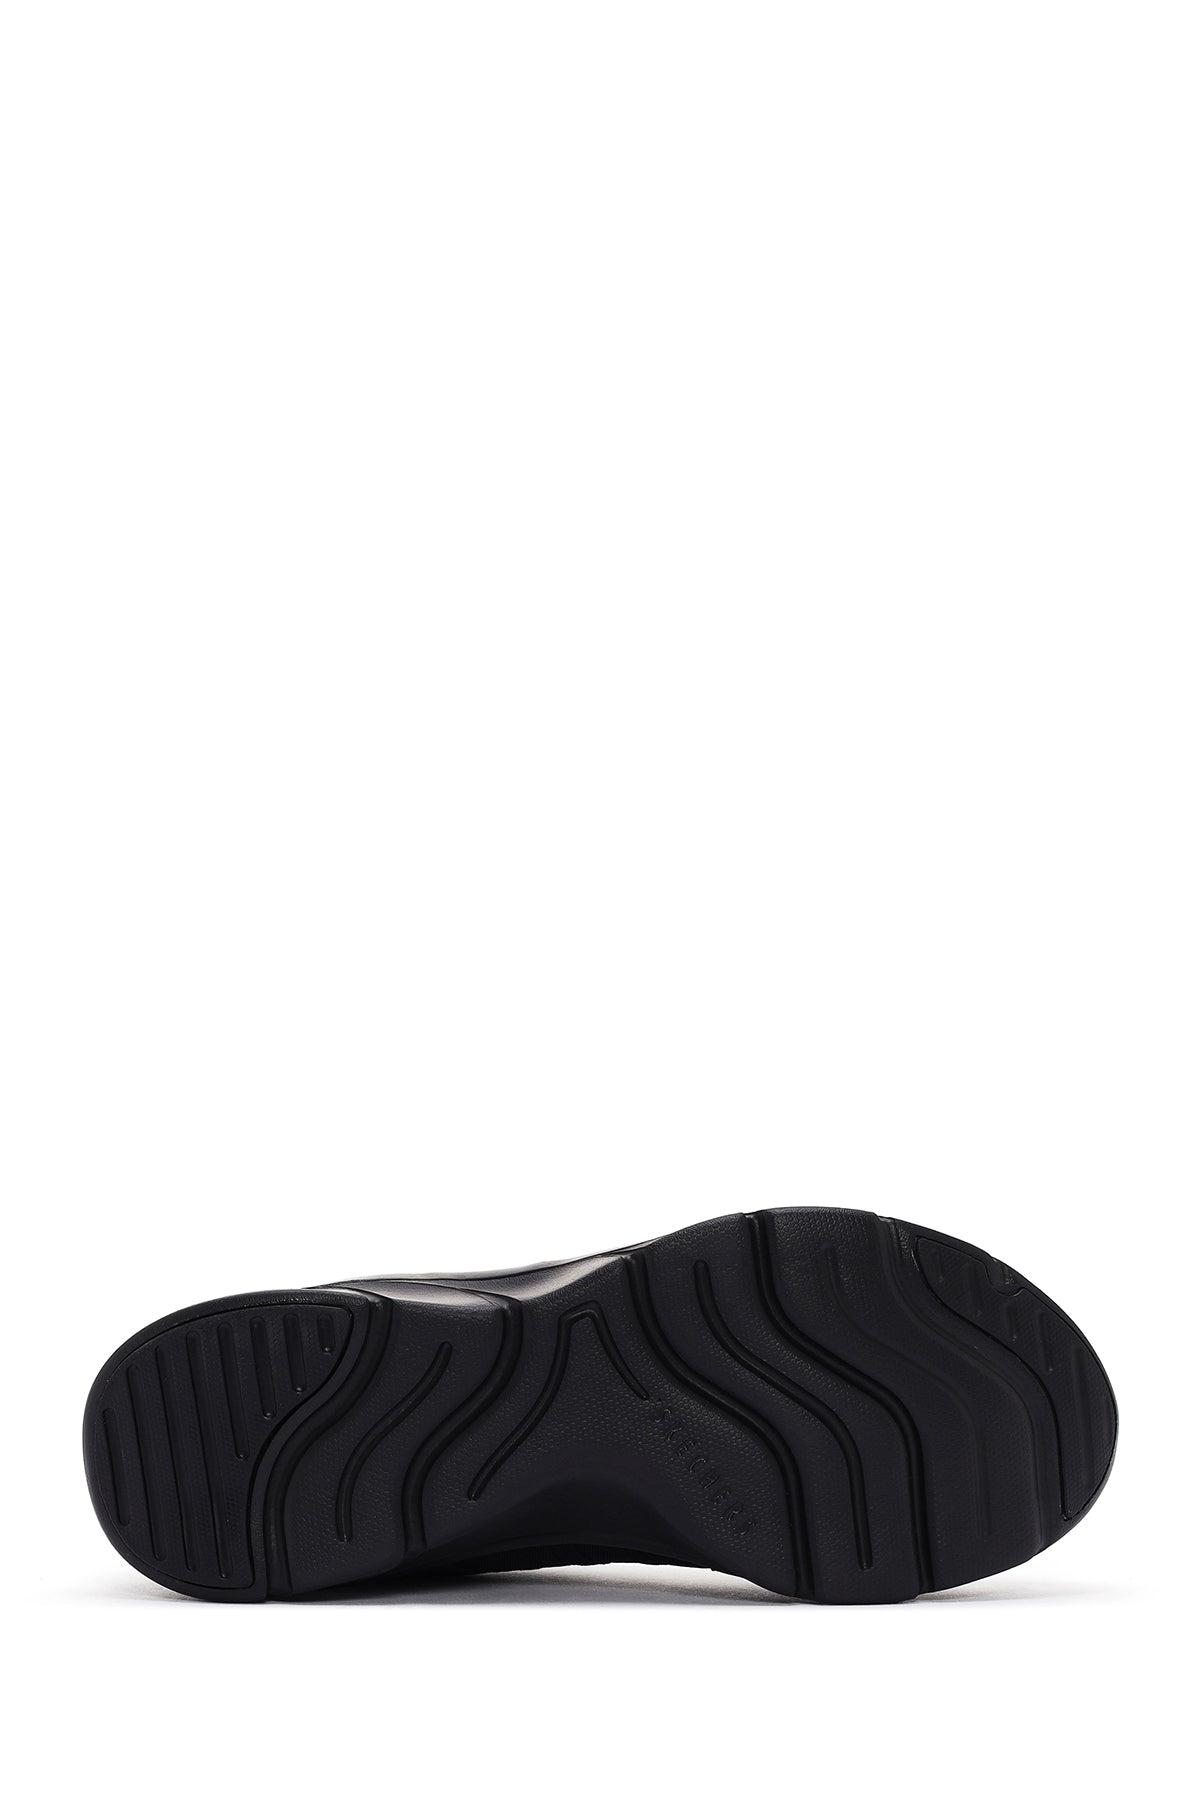 Skechers Kadın Siyah Kumaş Ayakkabı